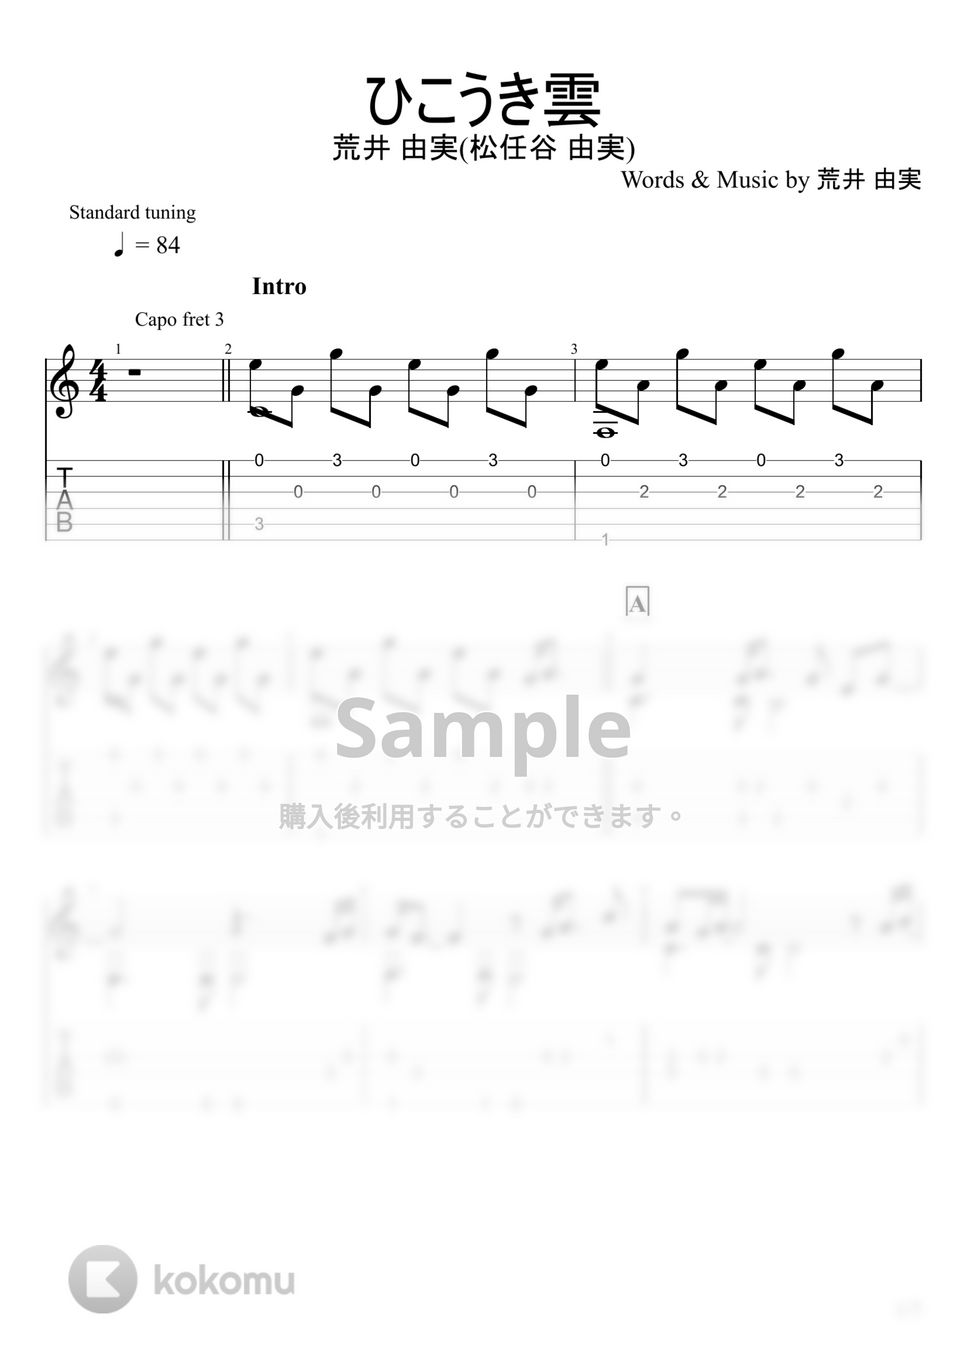 松任谷由実 - ひこうき雲 (ソロギター) by u3danchou